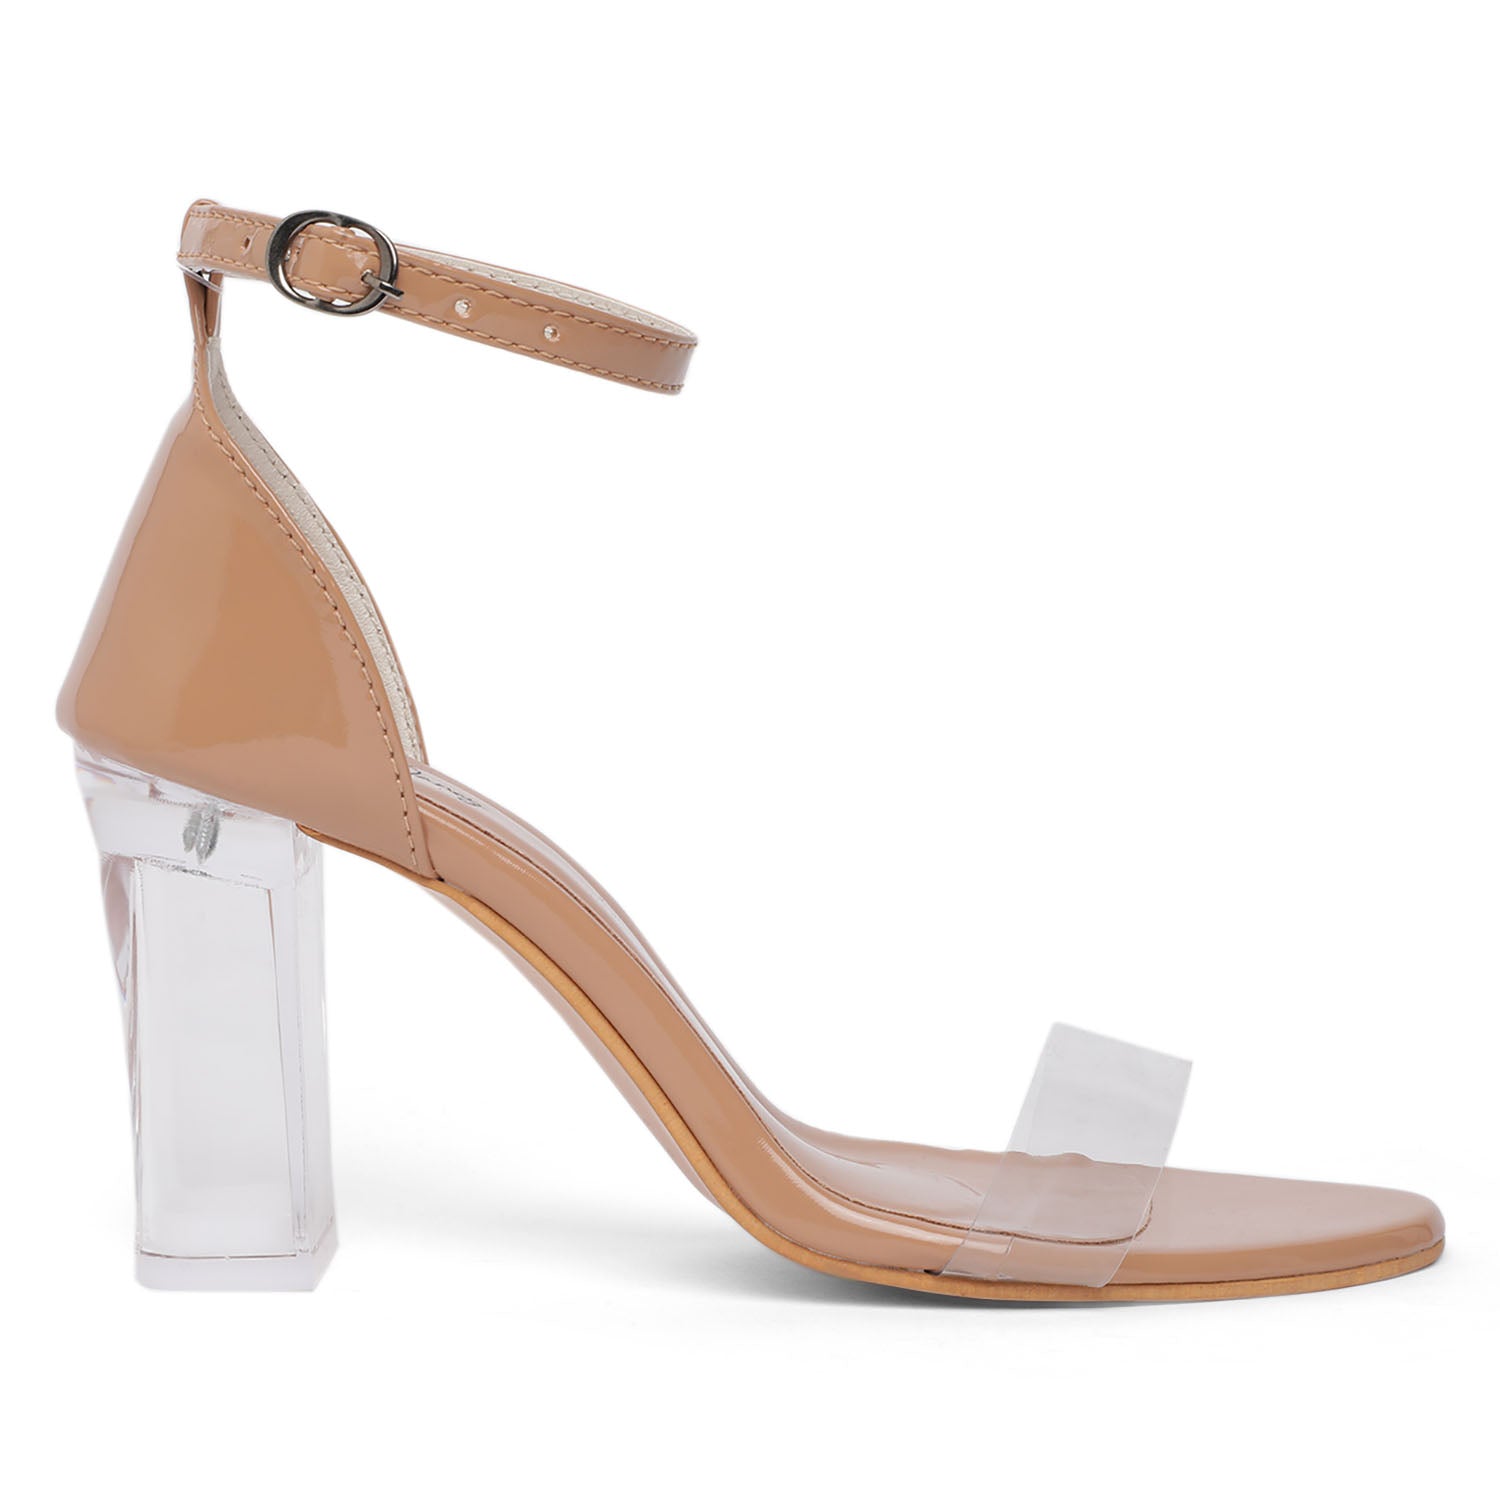 Porter Turquoise Ankle Strap Heels | Sandals heels, Heels, High heel sandals